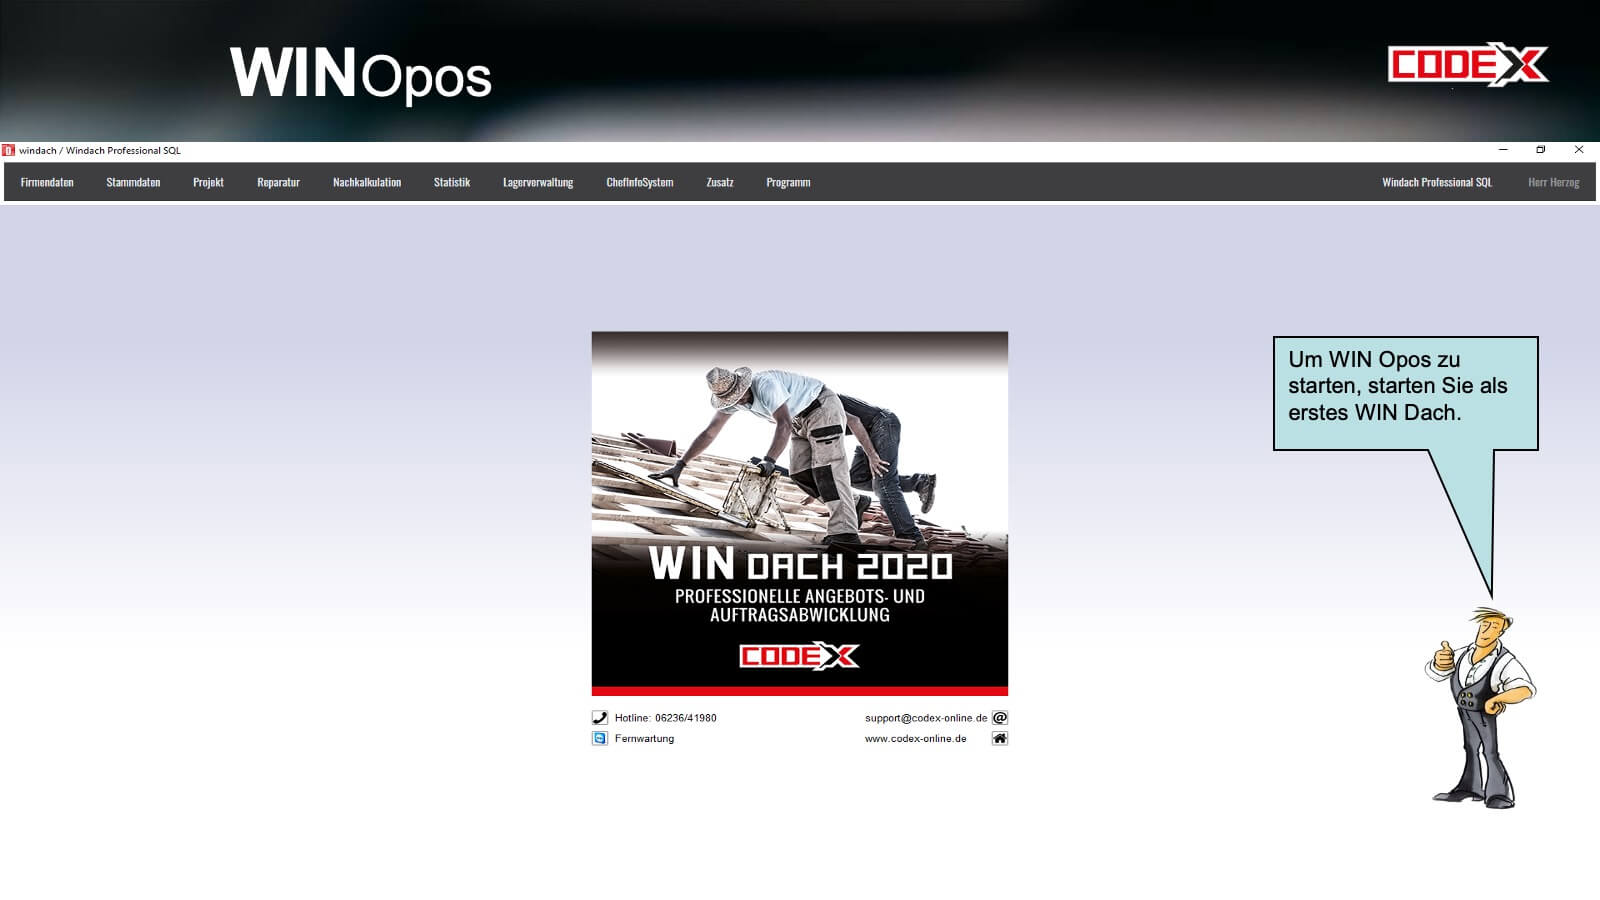 CODEX_WIN_OPOS_Folie02